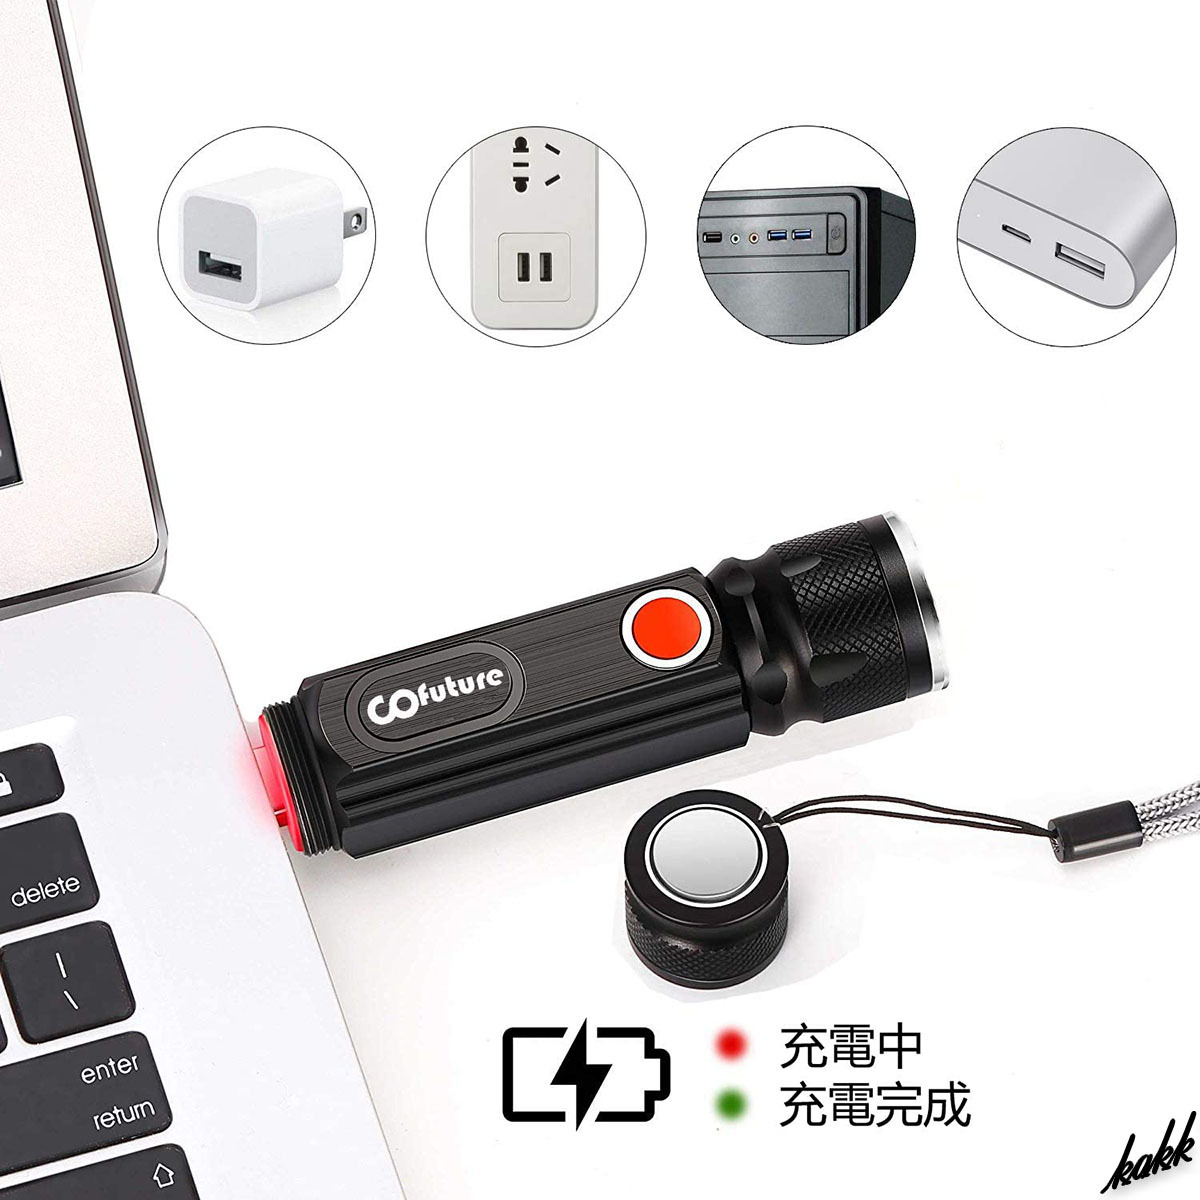 【COBライト付き】 LED ハンディライト USB充電 ズーム機能 4つの点灯モード 防水 コンパクト ポータブル 防災用ライト